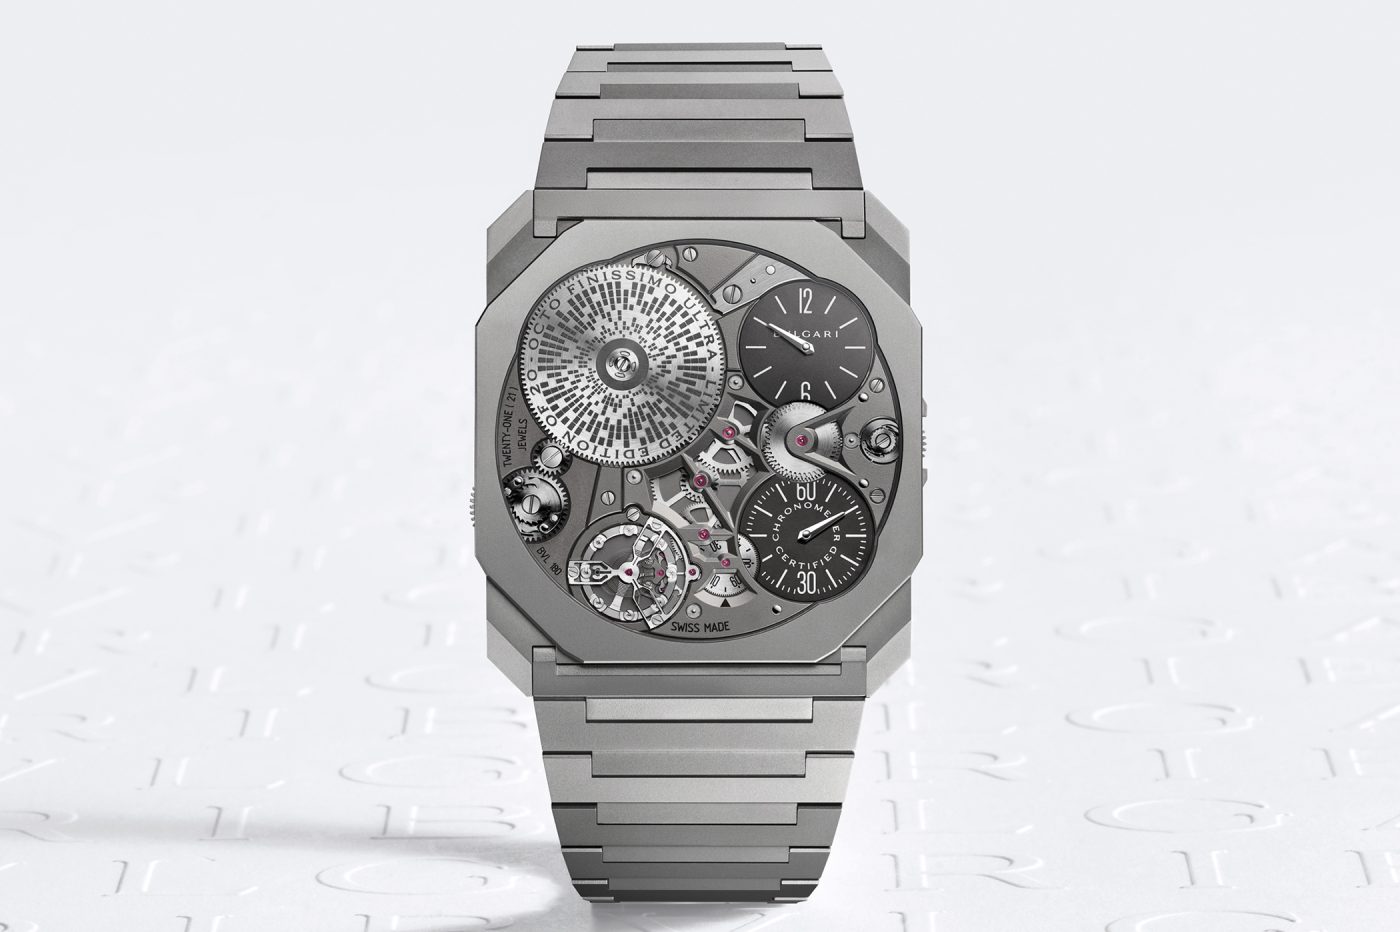 Bulgari Octo Finissimo Ultra COSC – nowy najcieńszy zegarek świata!